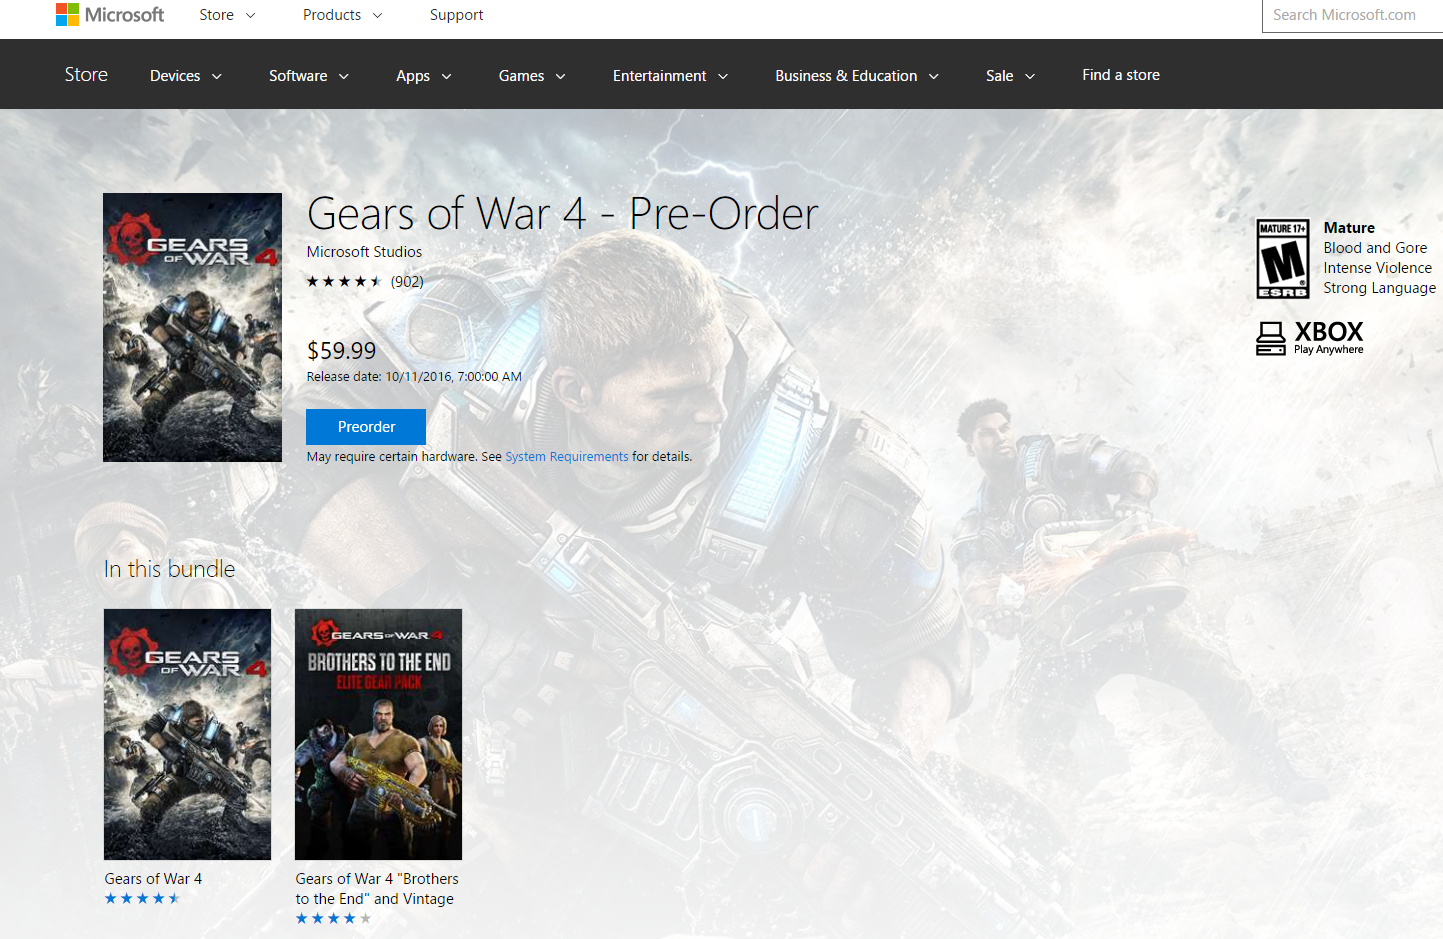 Xbox Play Anywhere Oyunları Windows 10'da Satışa Çıktı